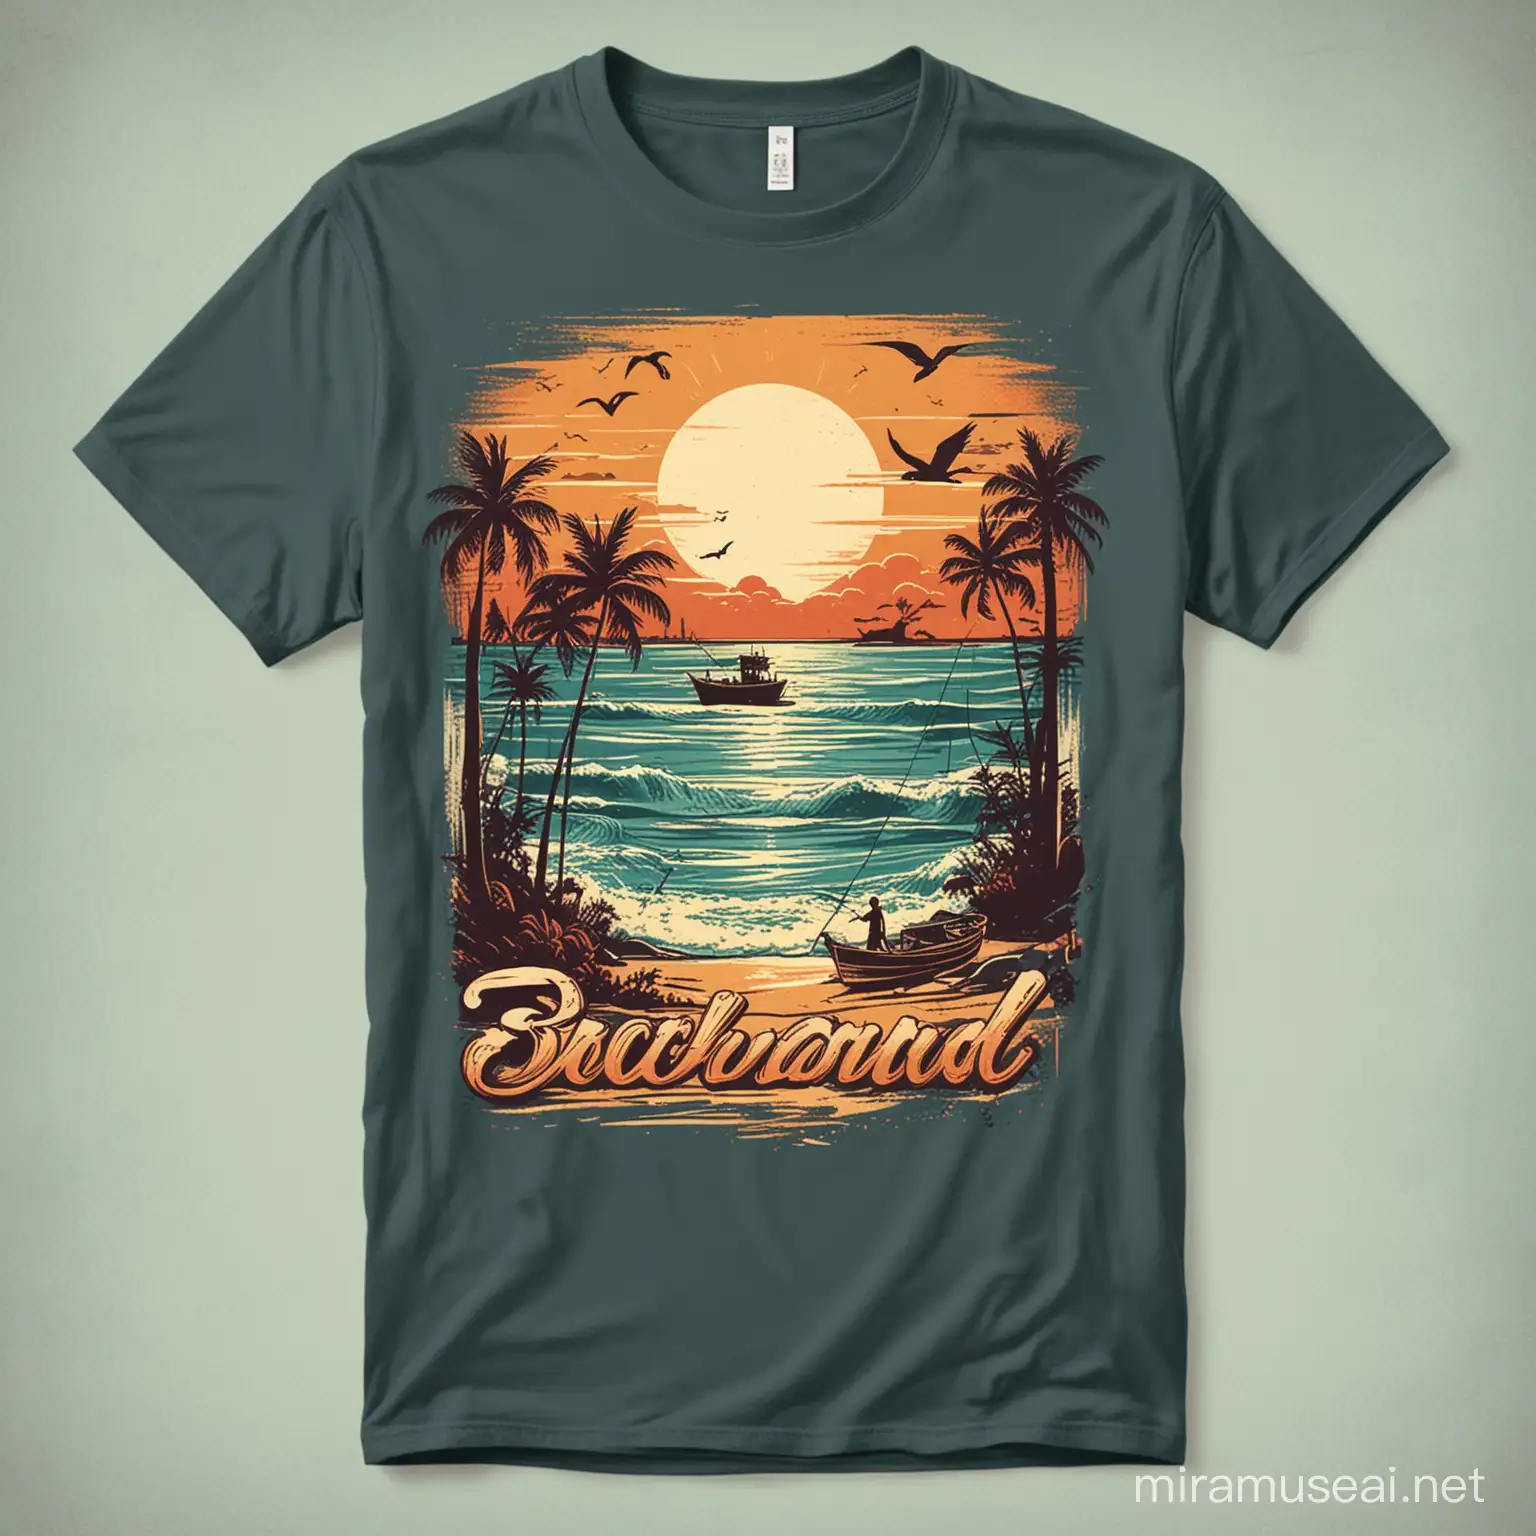 Charming Beach and Fishing Retro  tshirt Designs